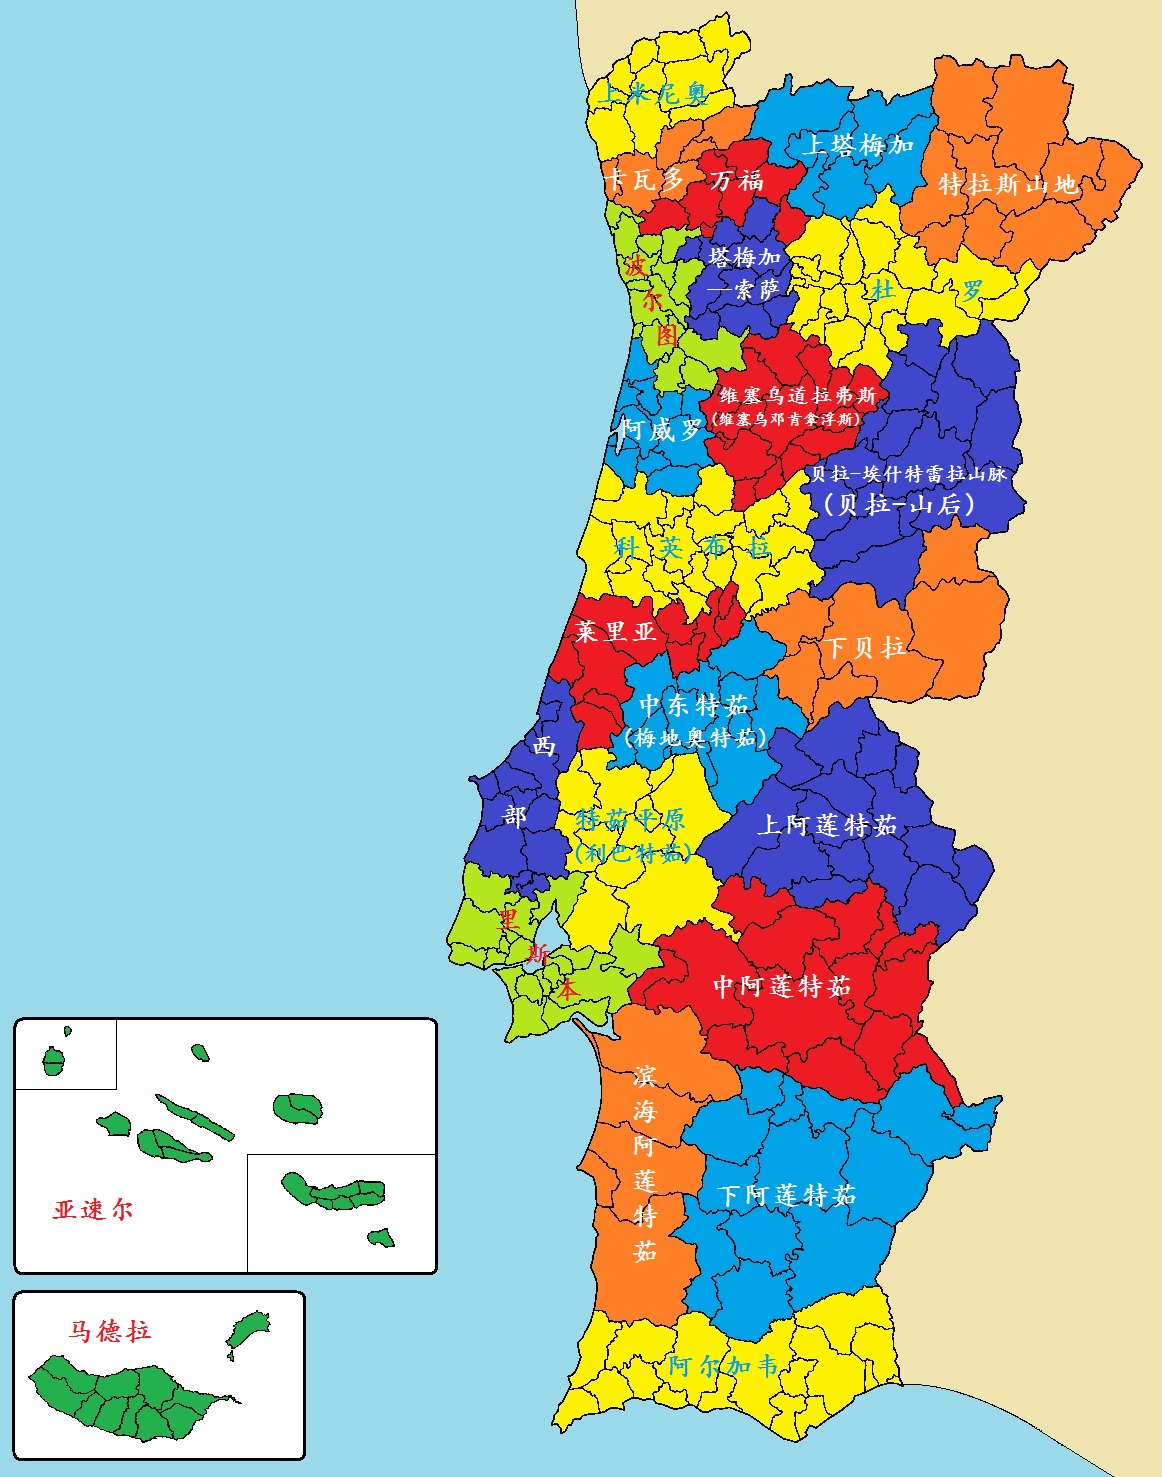 Álbumes 91+ Foto Mapa De Portugal Y Sus Islas Alta Definición Completa ...